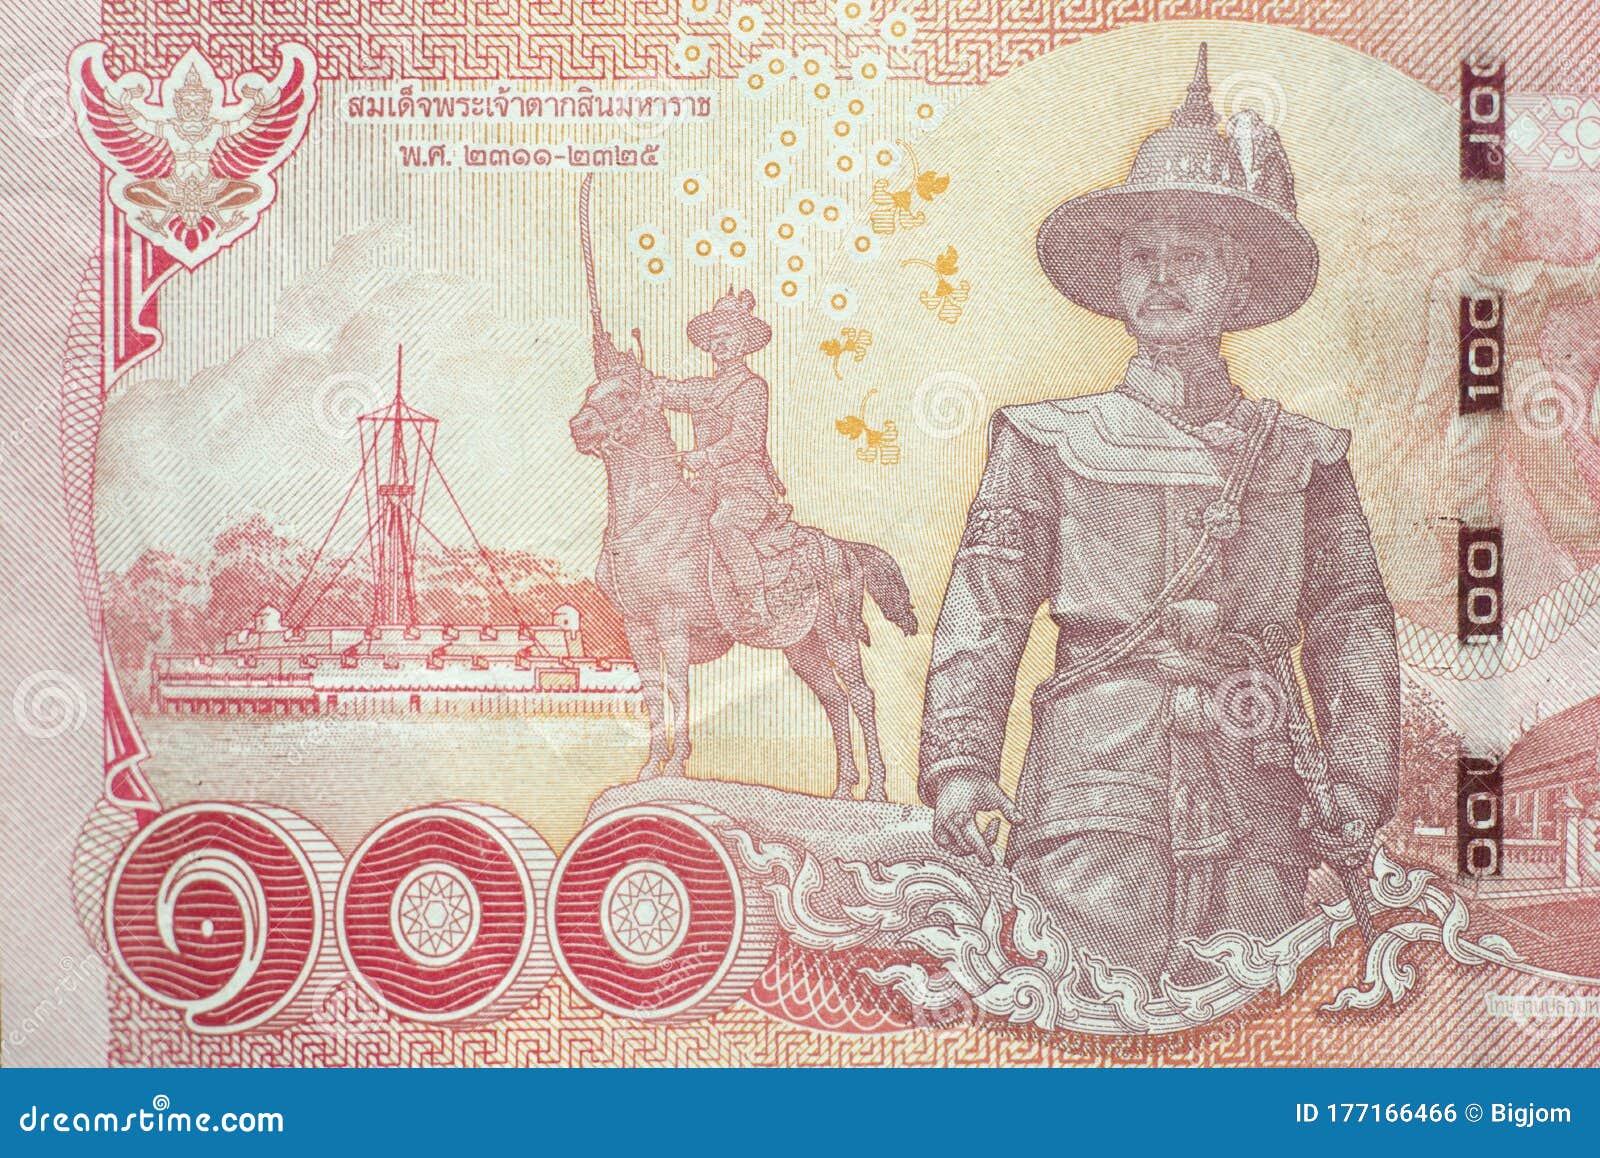 泰国与泰国泰铢硬币的泰铢钞票 库存照片. 图片 包括有 赊帐, 现金, 货币, 付款, 红色, 颜色, 投资 - 57297702